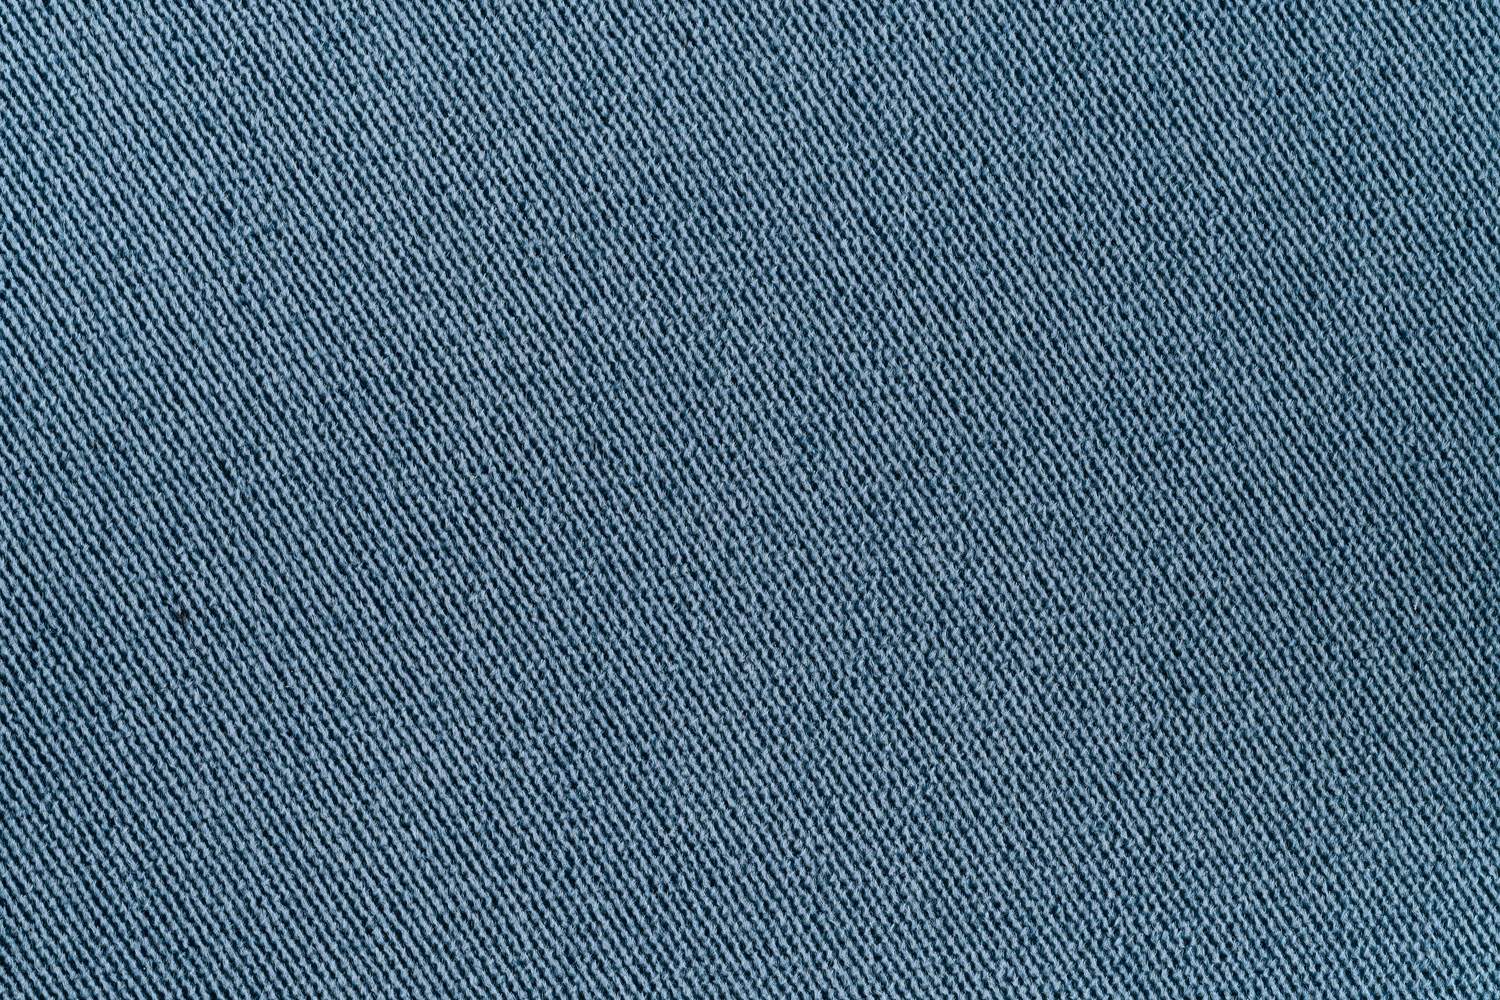 Ткань для оборотной стороны подушки цвет сине-серый (ОСПГБ)